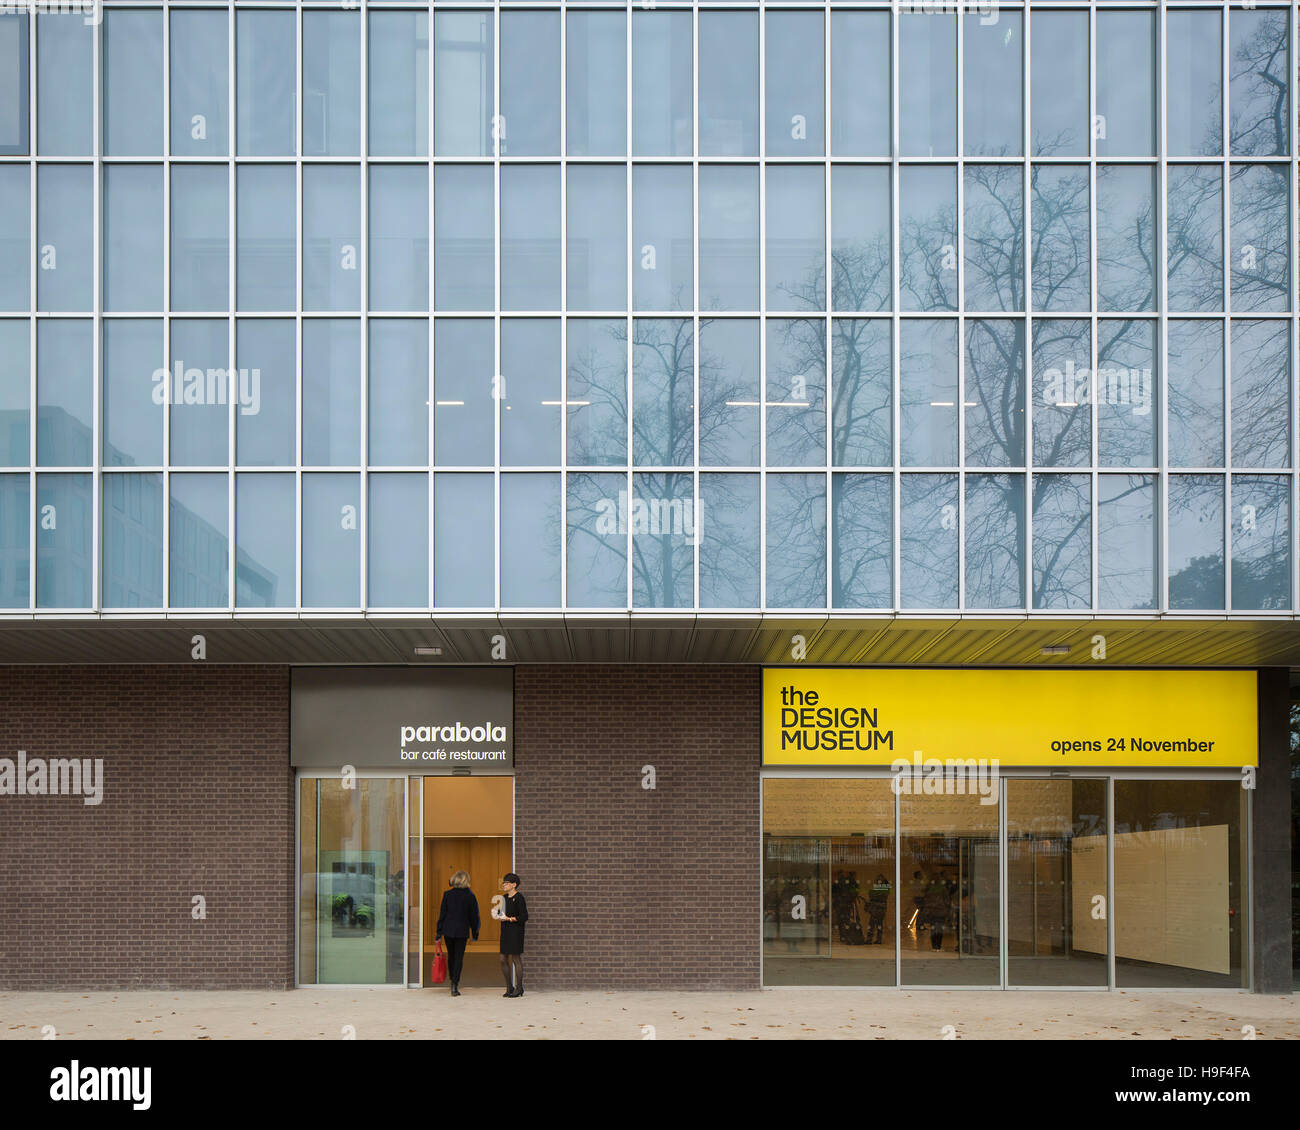 Detaillierten Außenansicht des Eingang. Design Museum, London, Vereinigtes Königreich. Architekt: John Pawson, 2016. Stockfoto